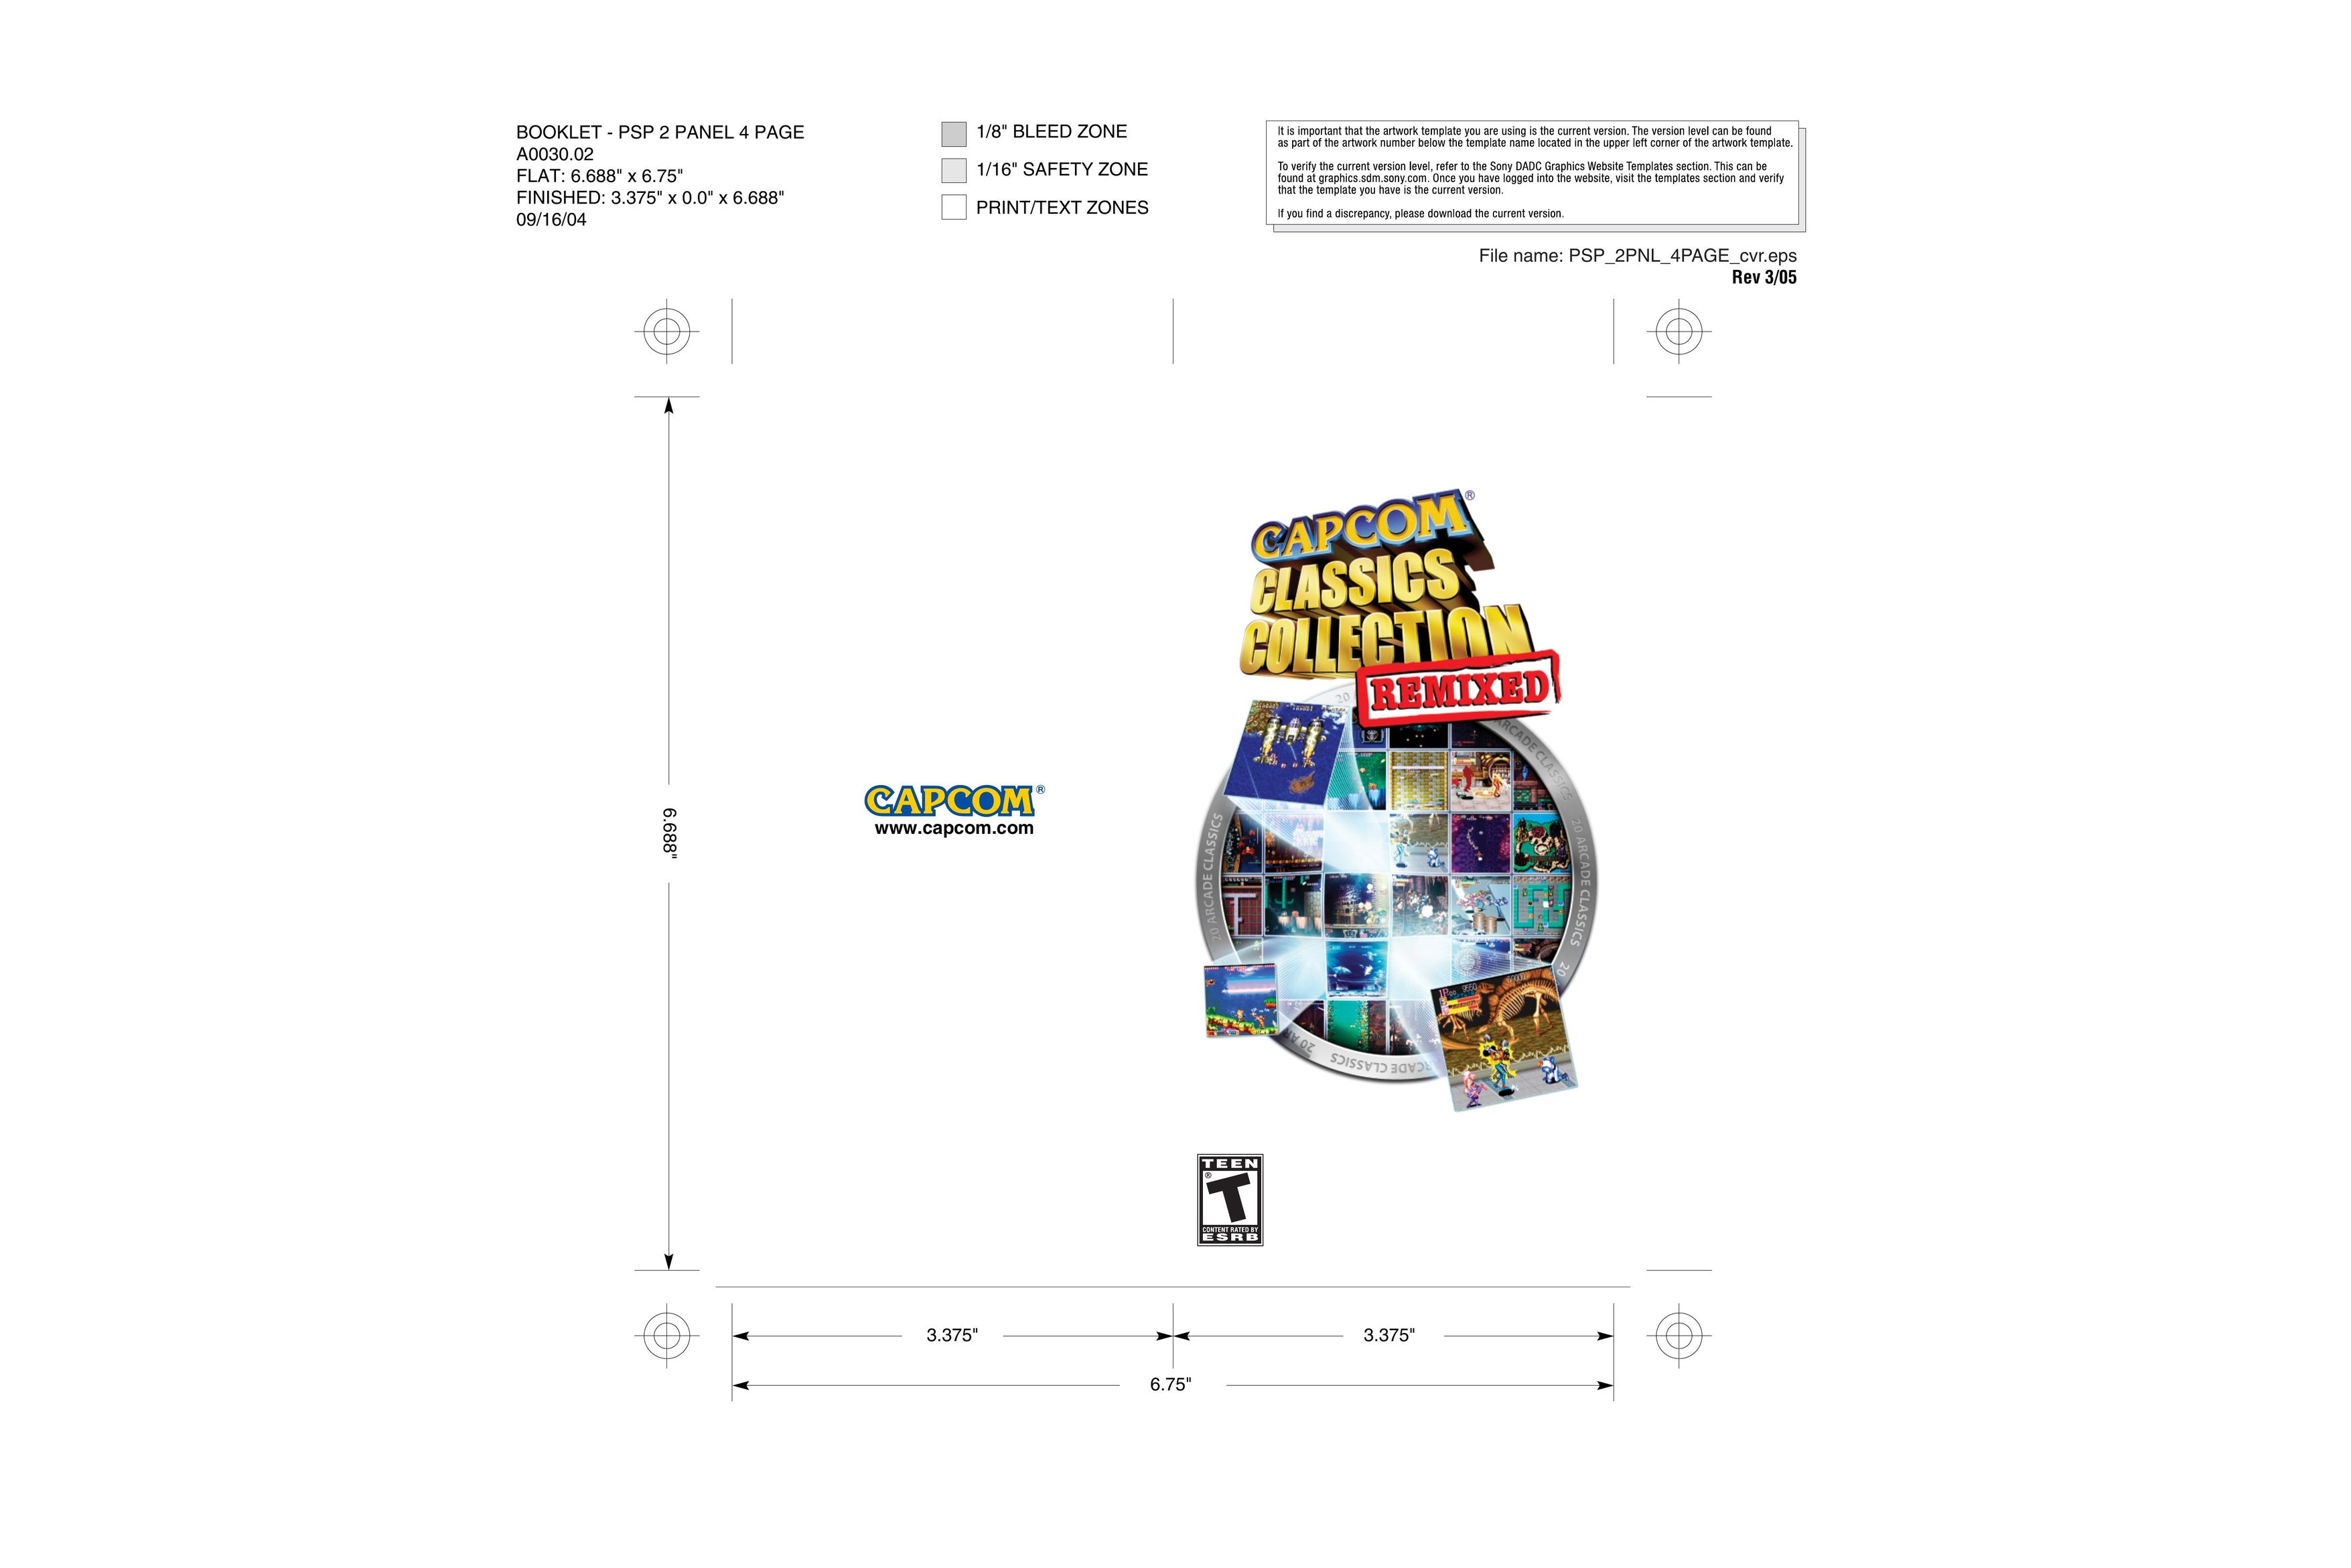 Capcom A0030.02 Video Games User Manual